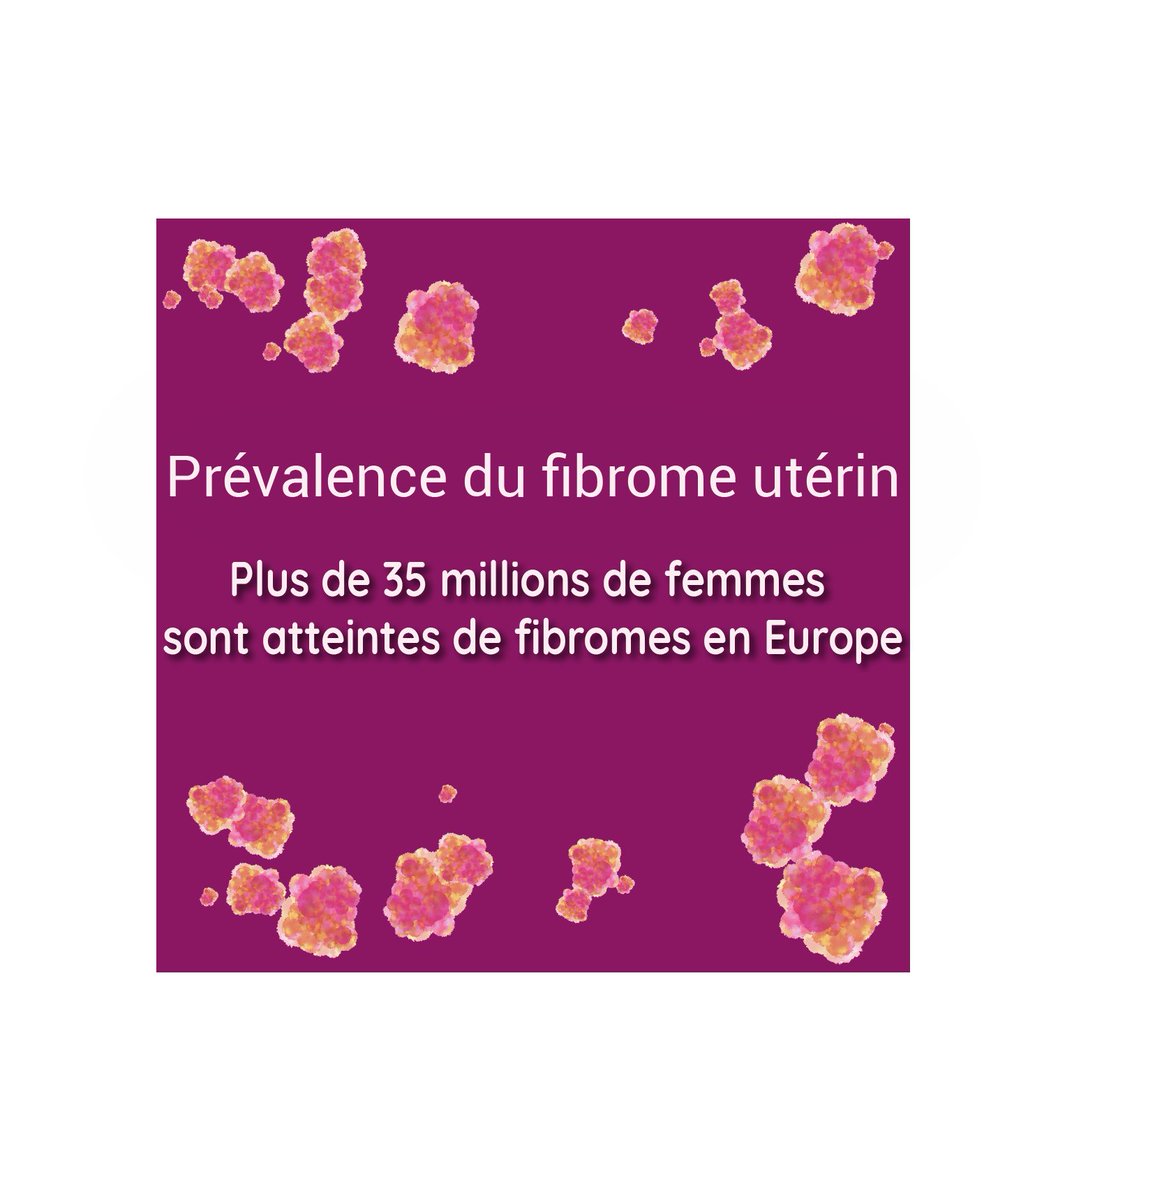 Le fibrome utérin est la maladie féminine la + fréquente. 
1 femme sur 4 souffre de fibromes. 
- 25% sont âgées de moins 35 ans. 
- 25% ont entre 40 et 50 ans. 
- 50% sont âgées de + de 50 ans. 
Il est temps d'AGIR pour la santé des femmes atteintes de fibromes. #SantéDesFemmes